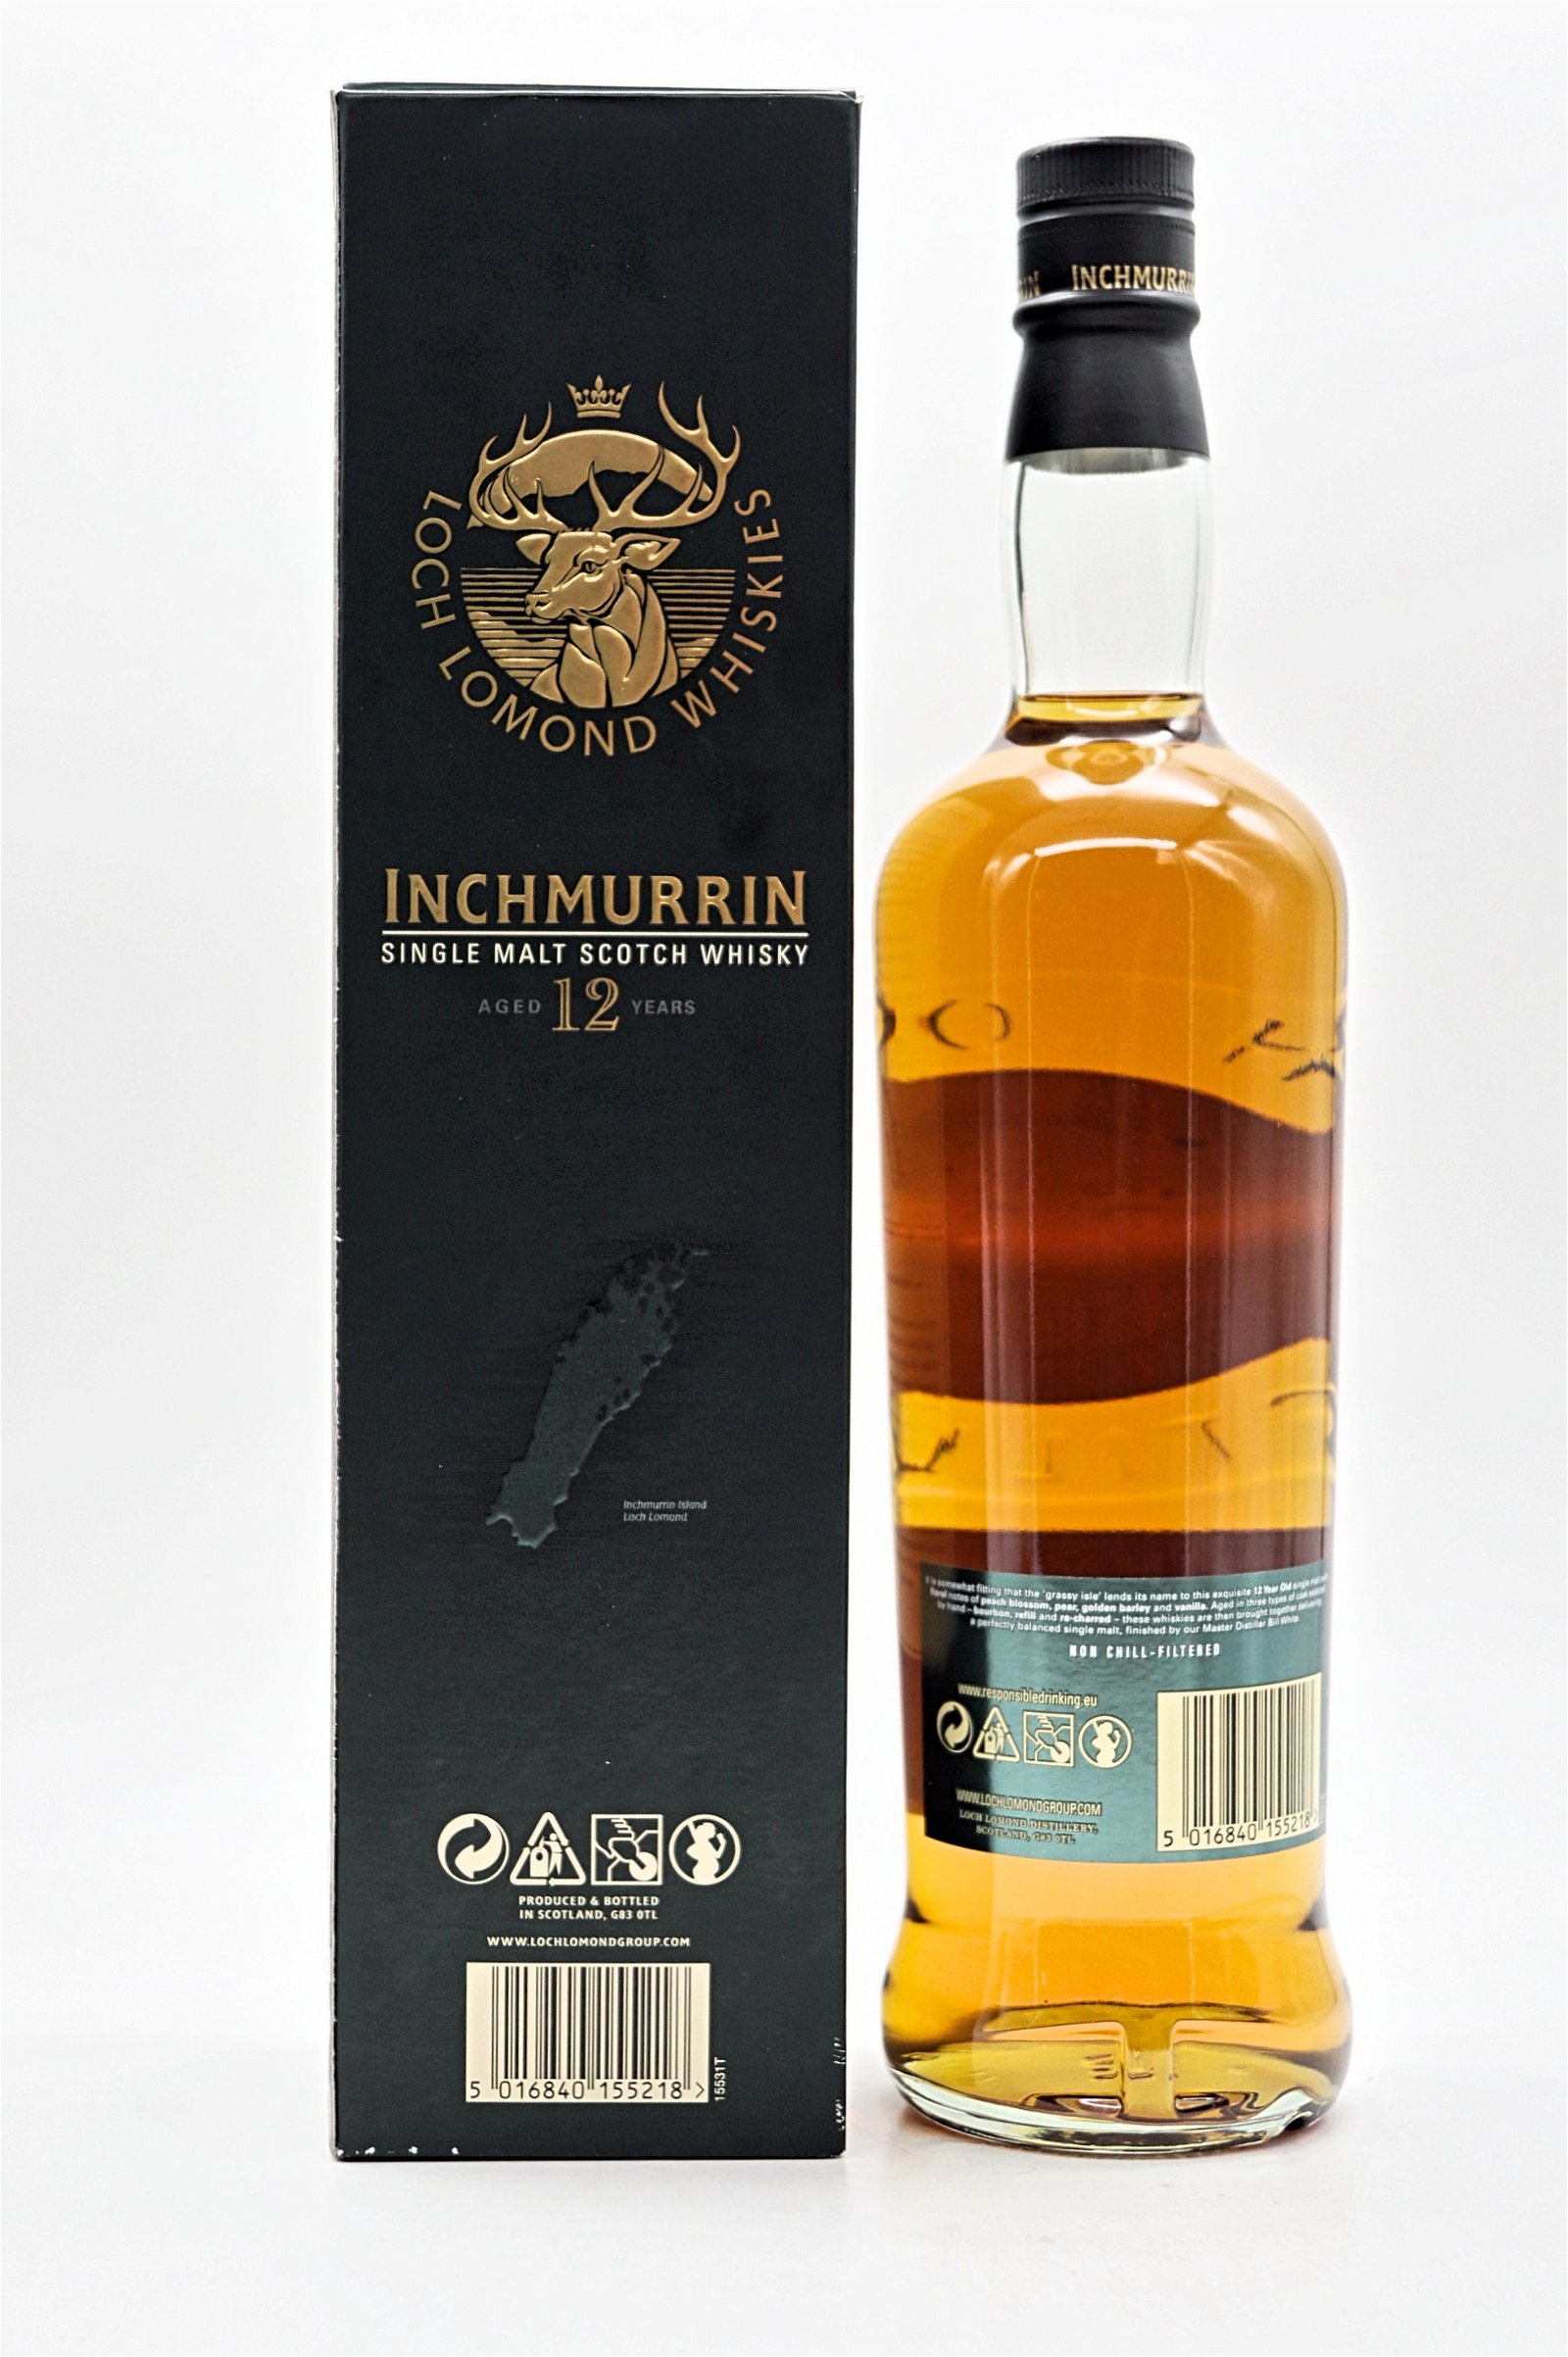 Loch Lomond Whiskies 12 Jahre Inchmurrin Island Collection Single Malt Scotch Whisky